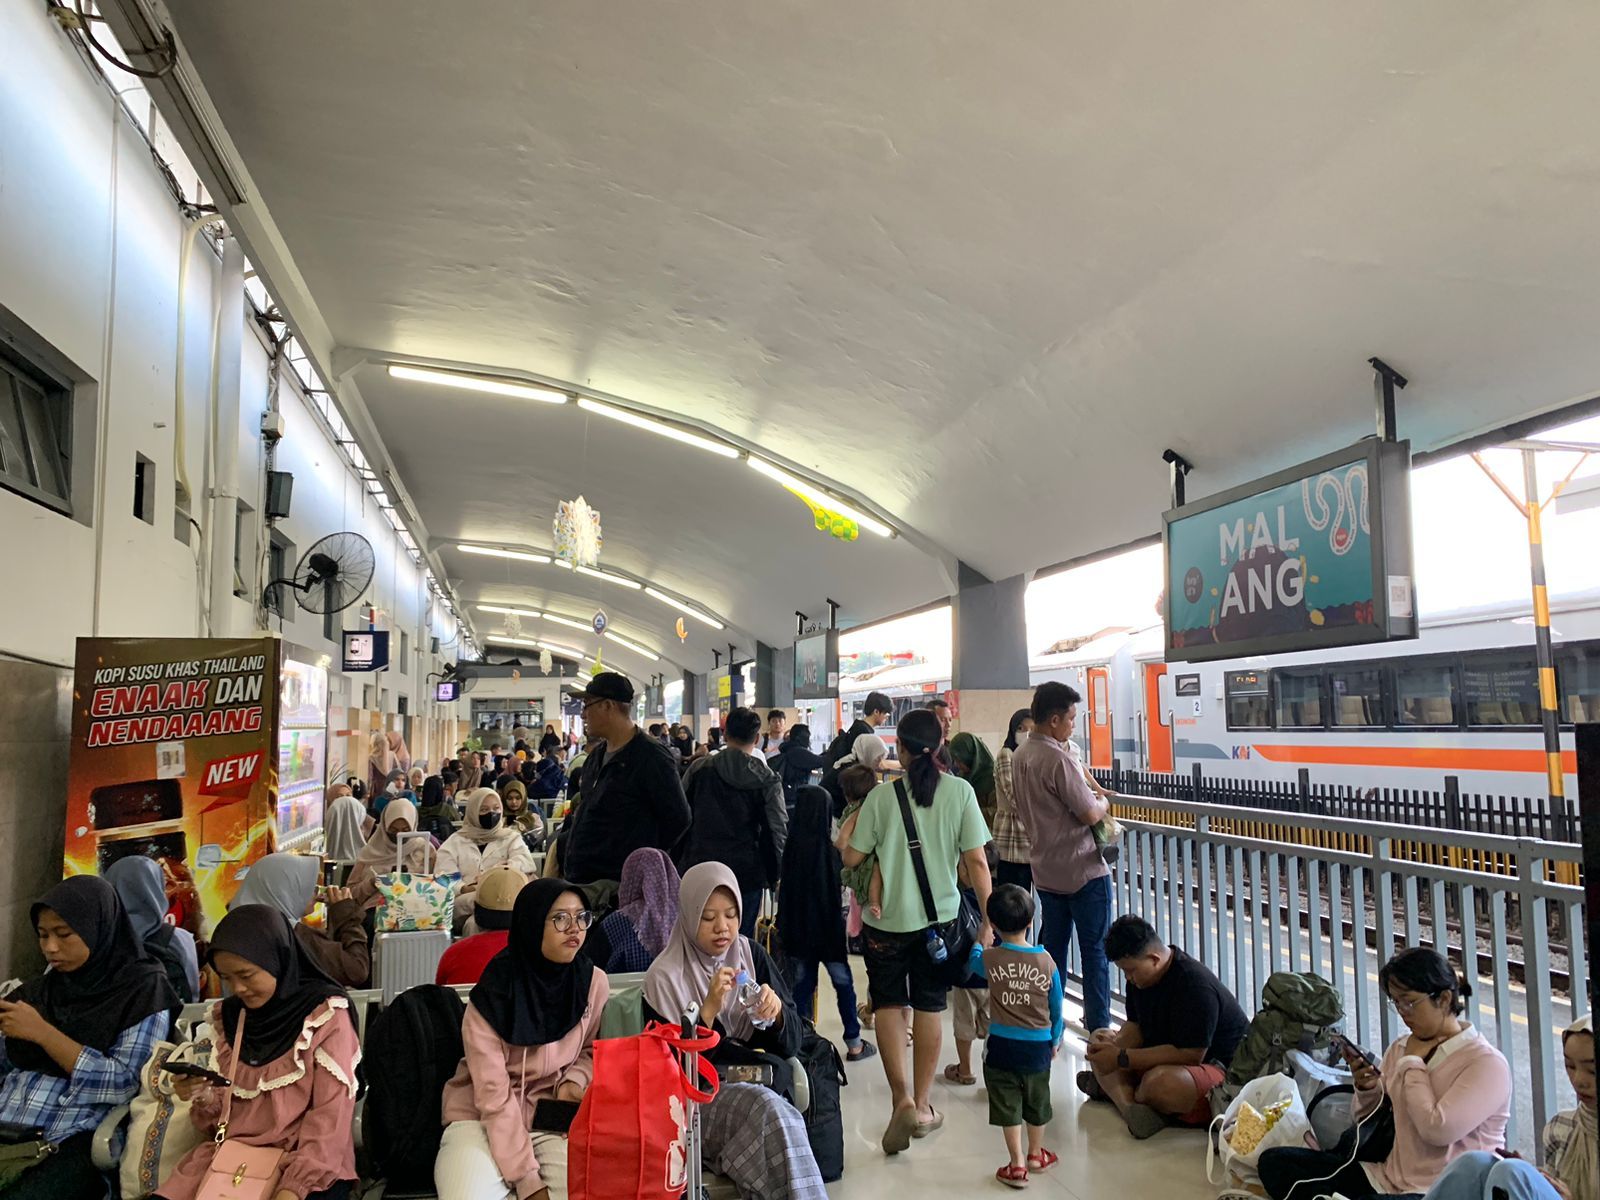 Jumlah Penumpang di Stasiun Malang Saat Libur Waisak Naik 37 Persen